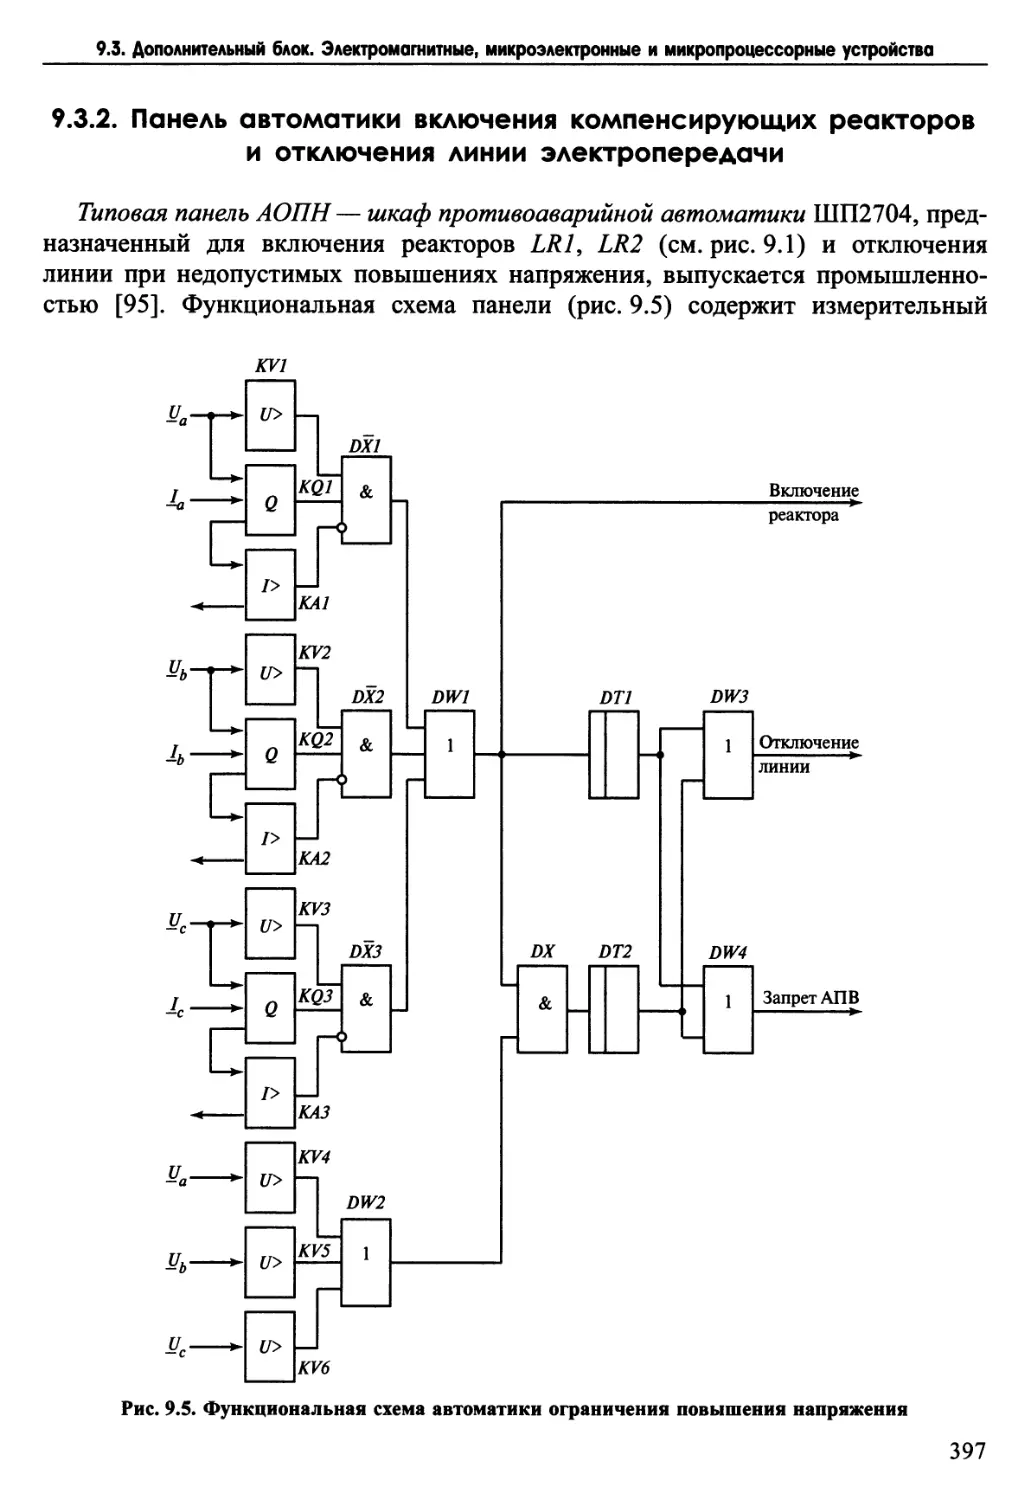 9.3.2. Панель автоматики включения компенсирующих реакторов и отключения линии электропередачи